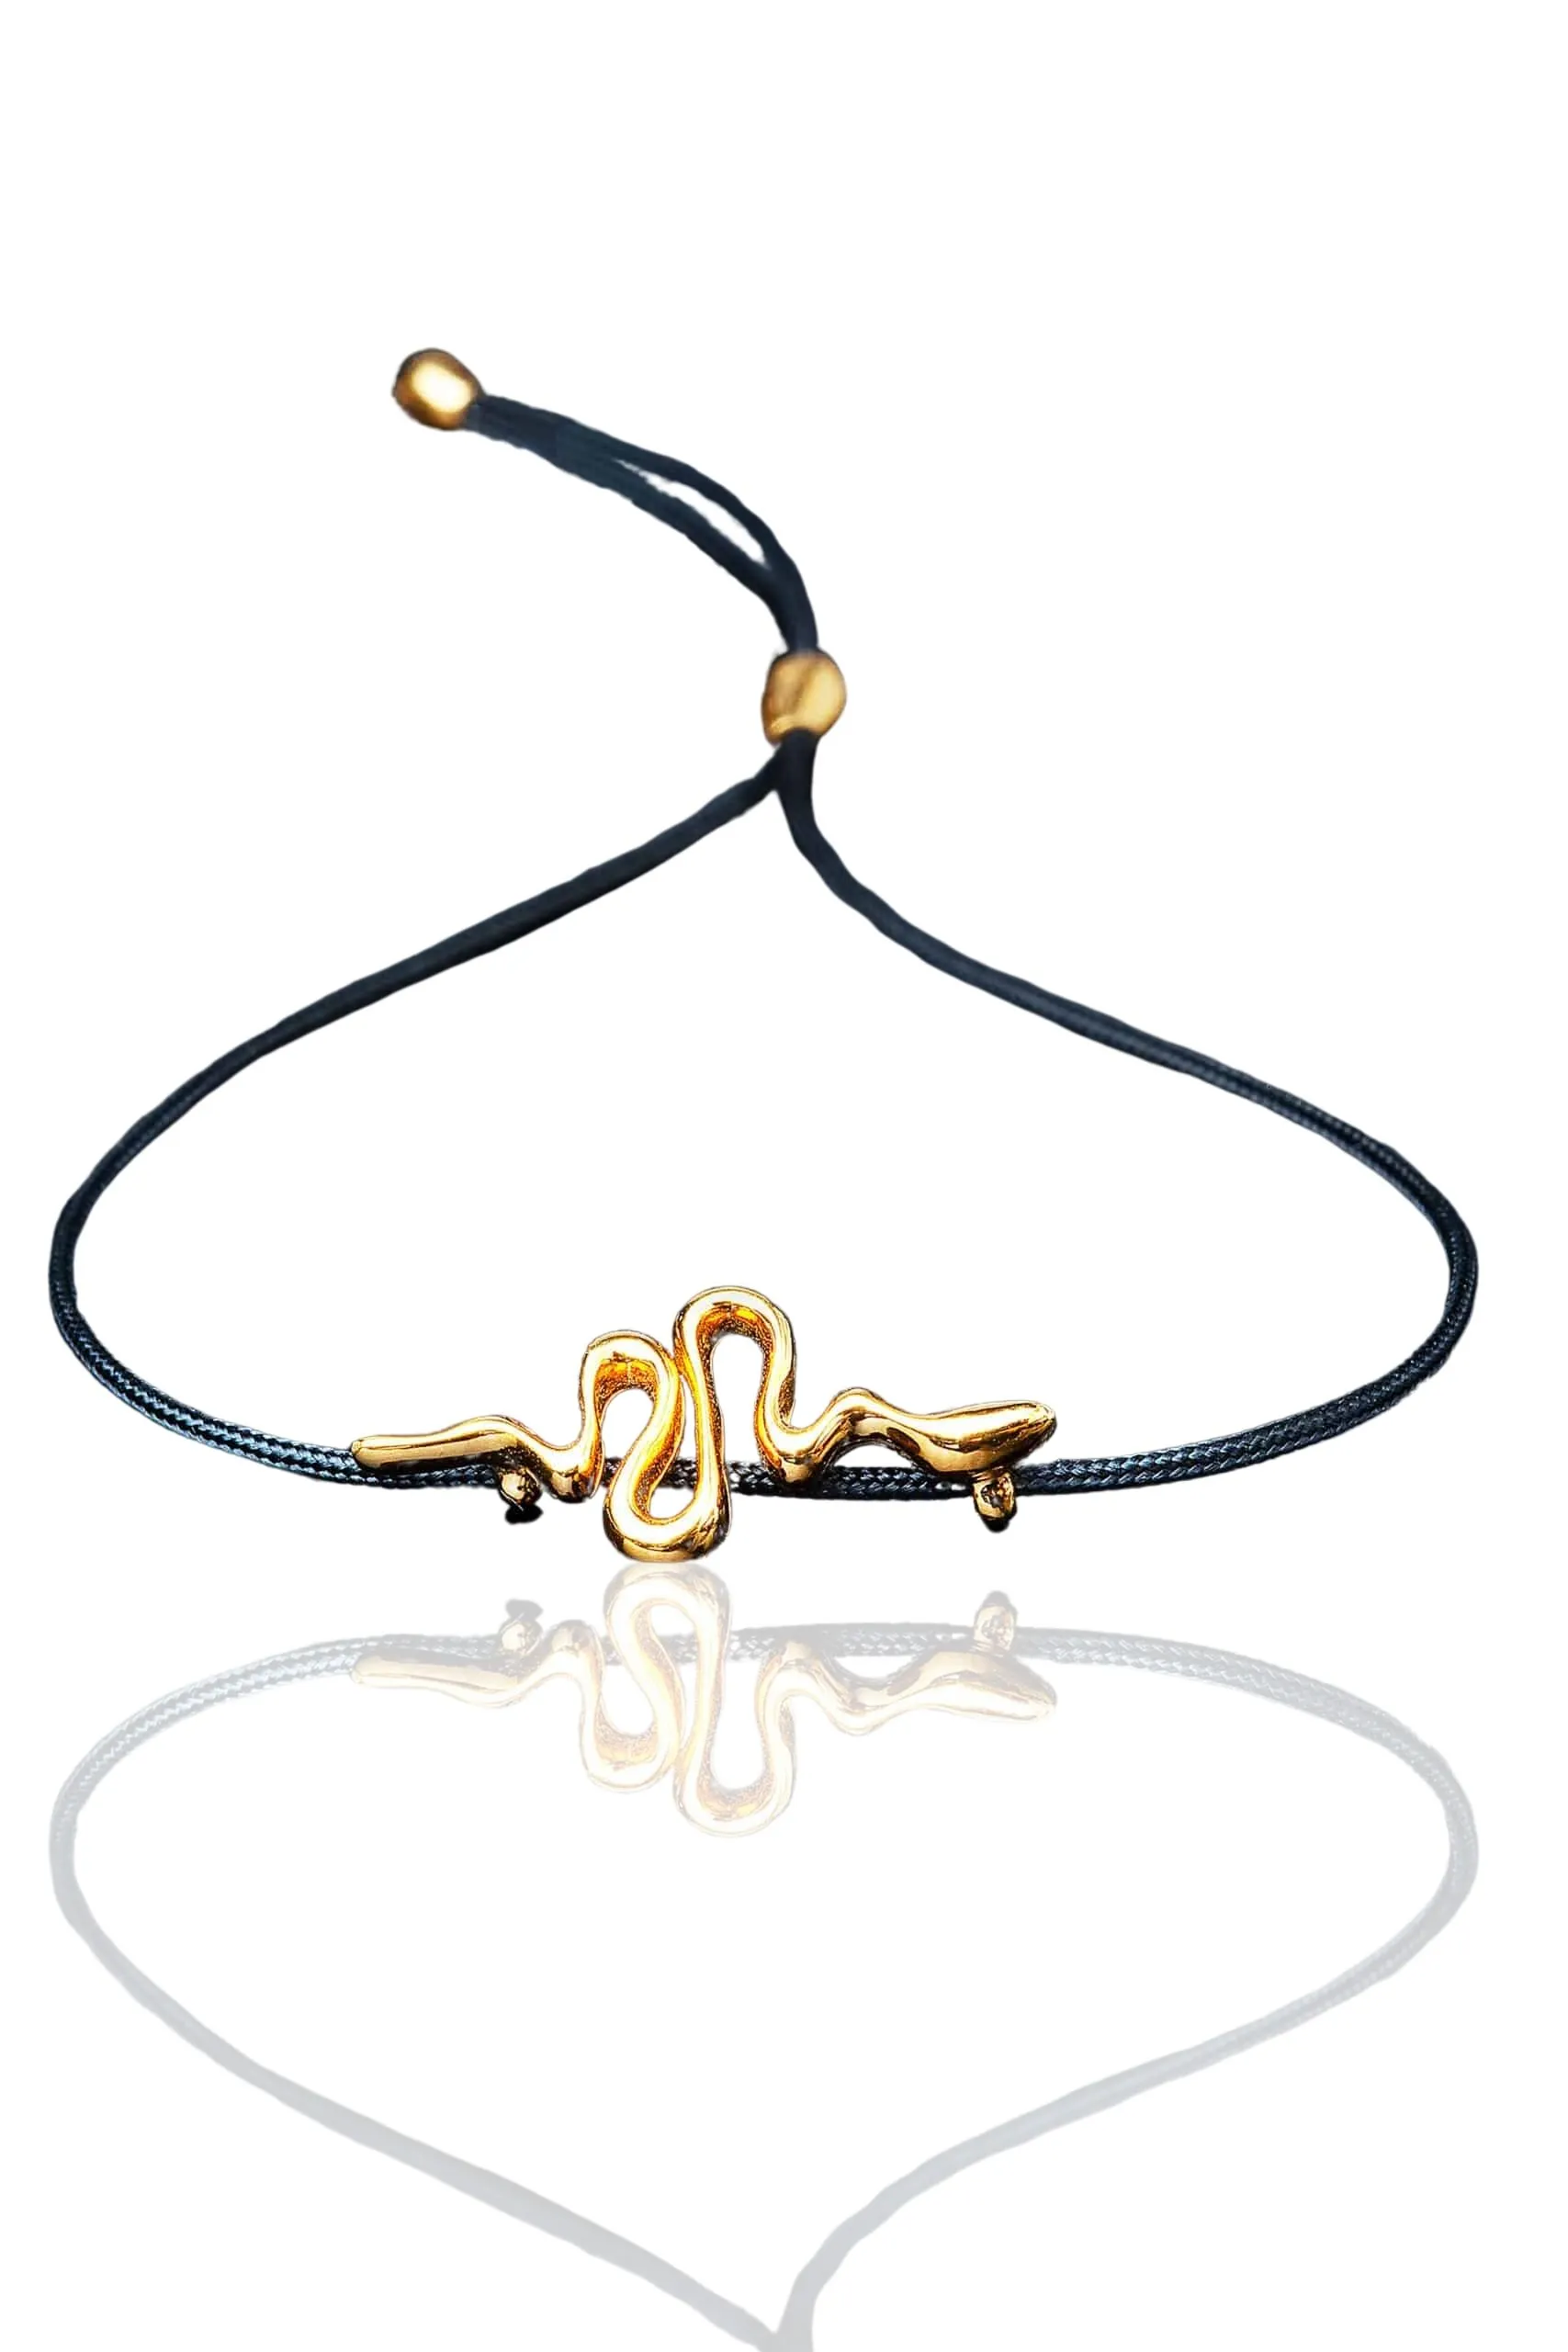 Χειροποίητα κοσμήματα | Ασημένιο βραχιόλι φίδι με επιχρύσωση main